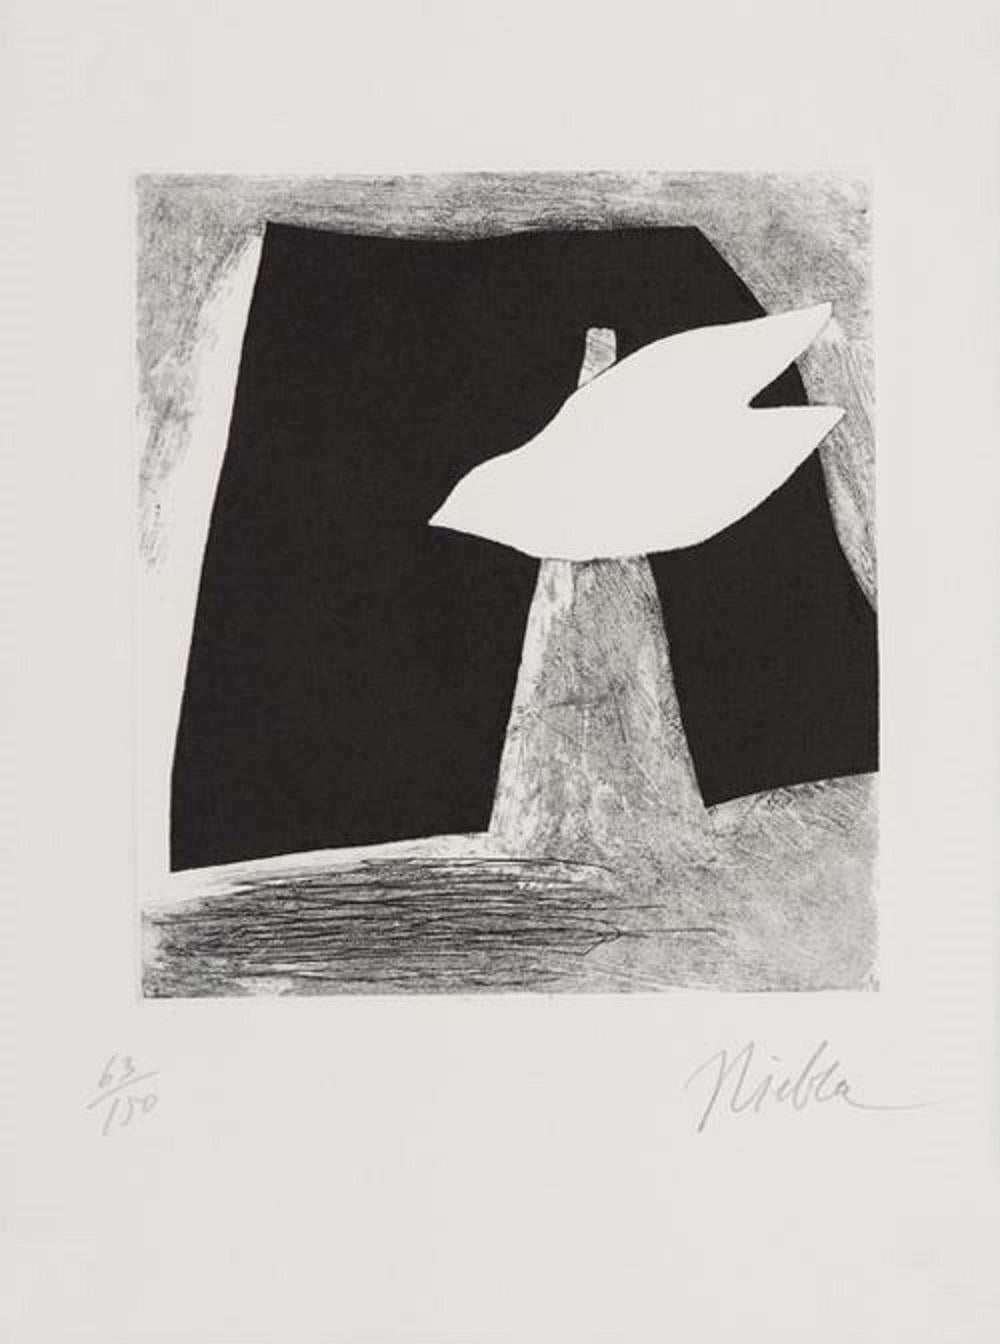 José Niebla Artiste espagnol Original Sérigraphie signée 1996 n3